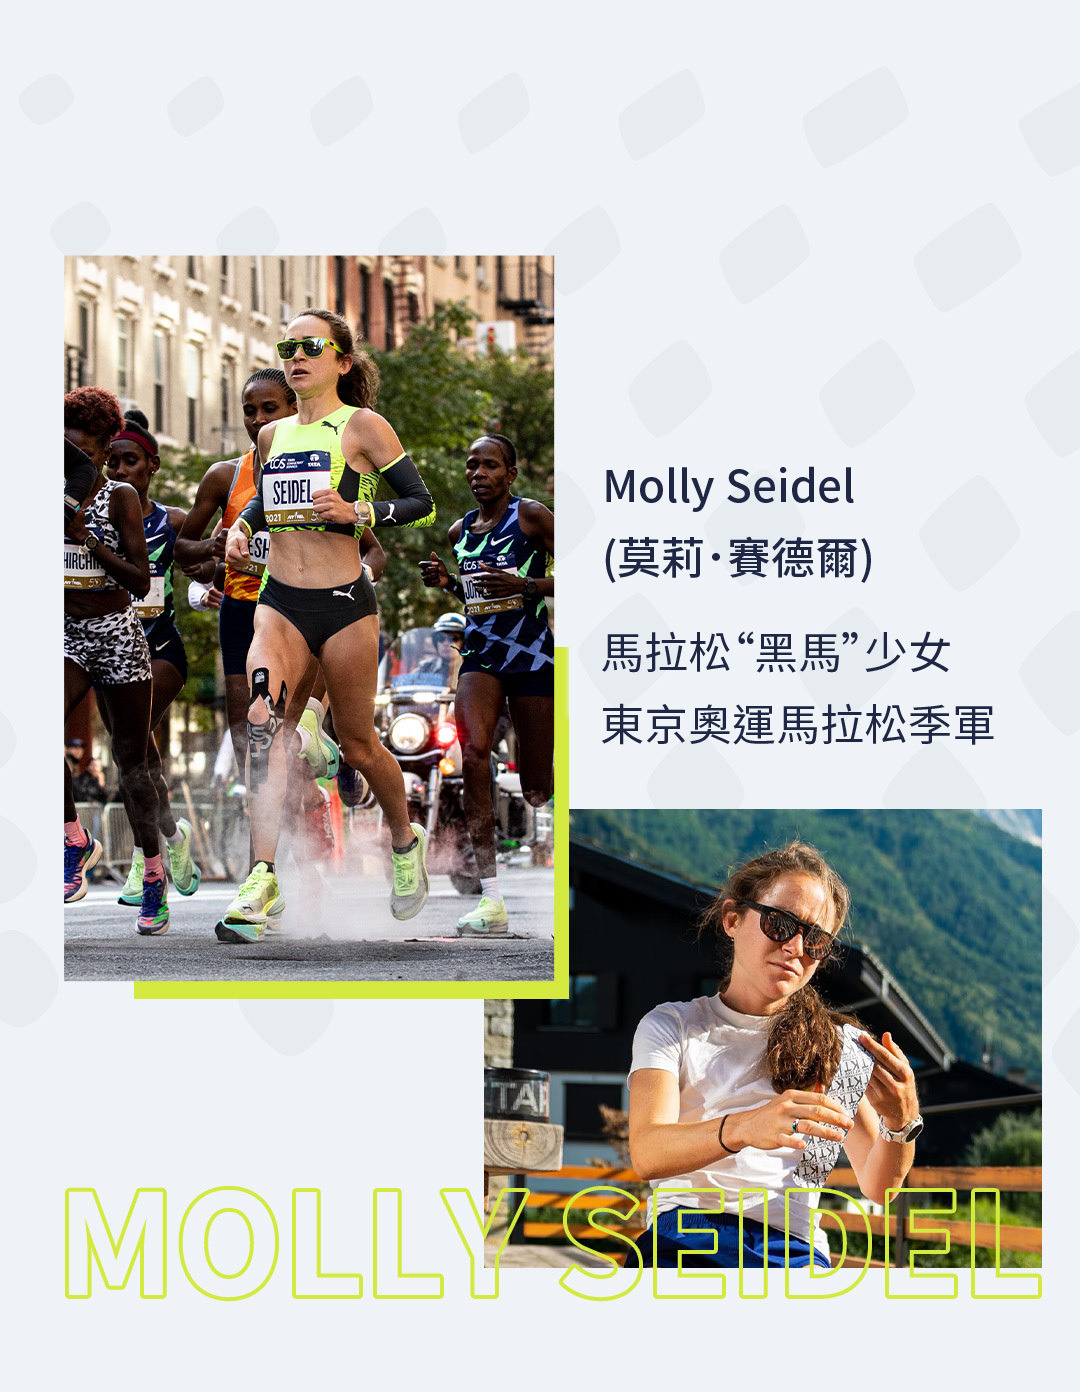 馬拉松“黑馬”少女 東京奧運馬拉松季軍 Molly Seidel (莫莉．賽德爾)